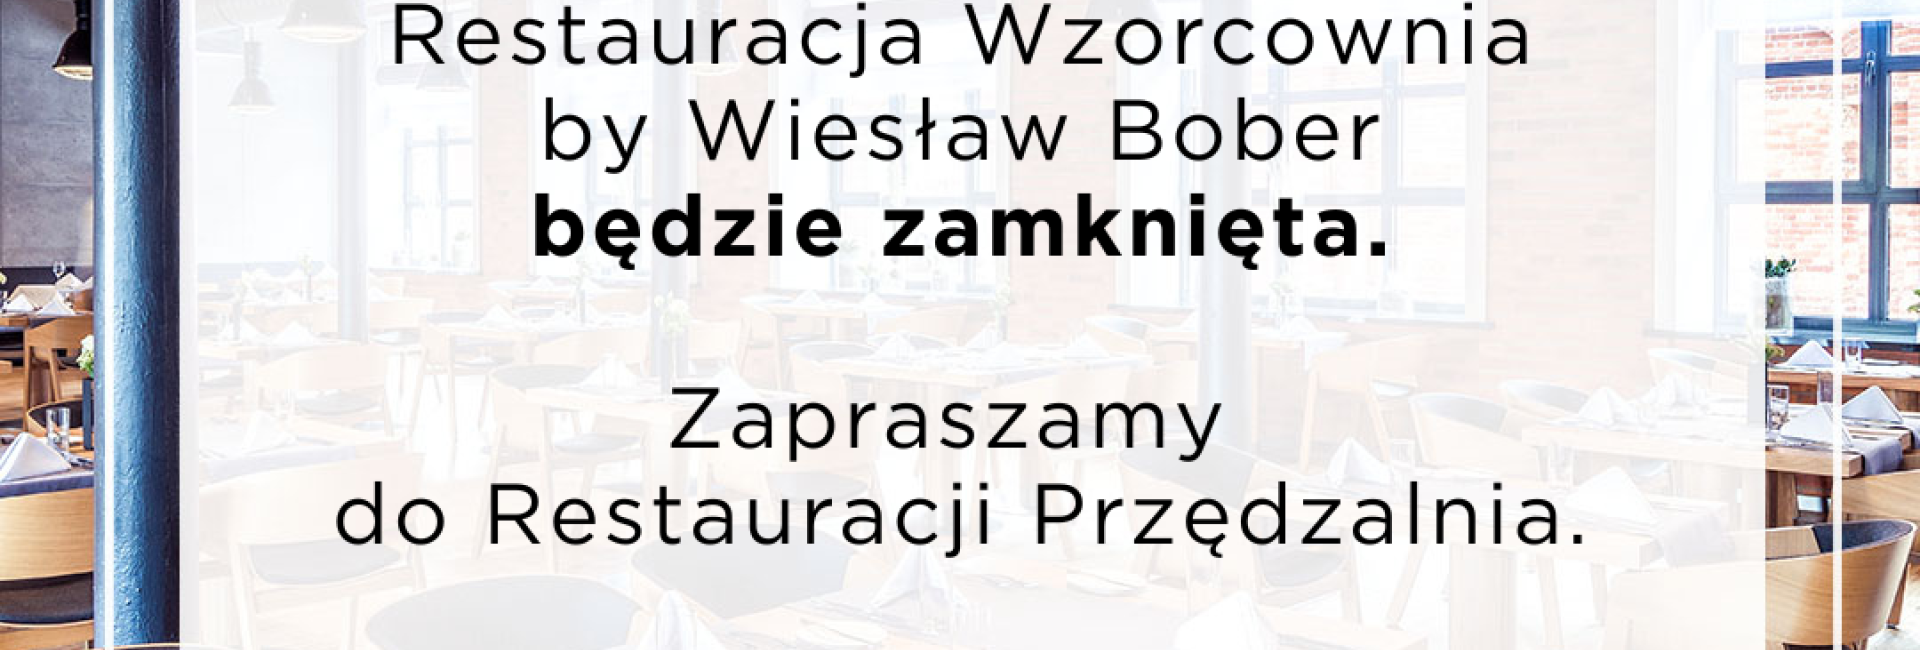 29 grudnia Restauracja Wzorcownia by Wiesław Bober będzie zamknięta 